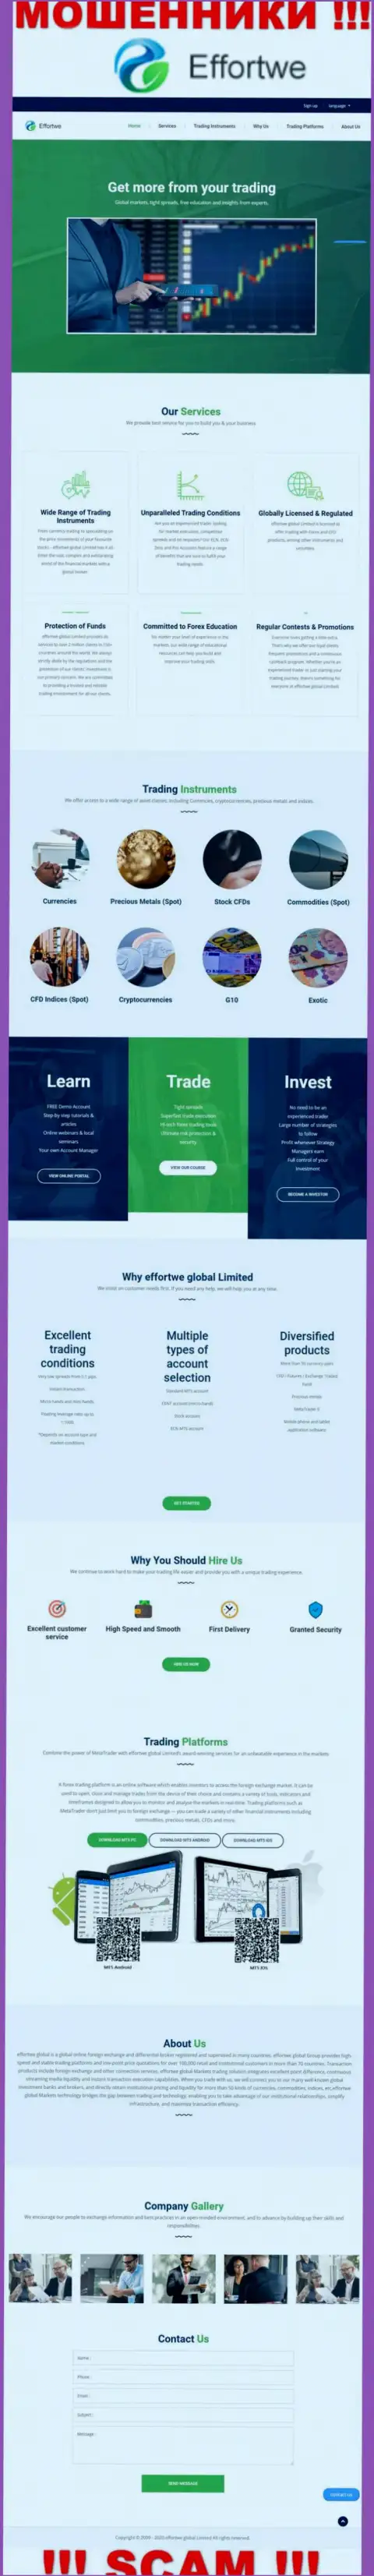 Сайт компании Effortwe Global Limited, заполненный фальшивой информацией